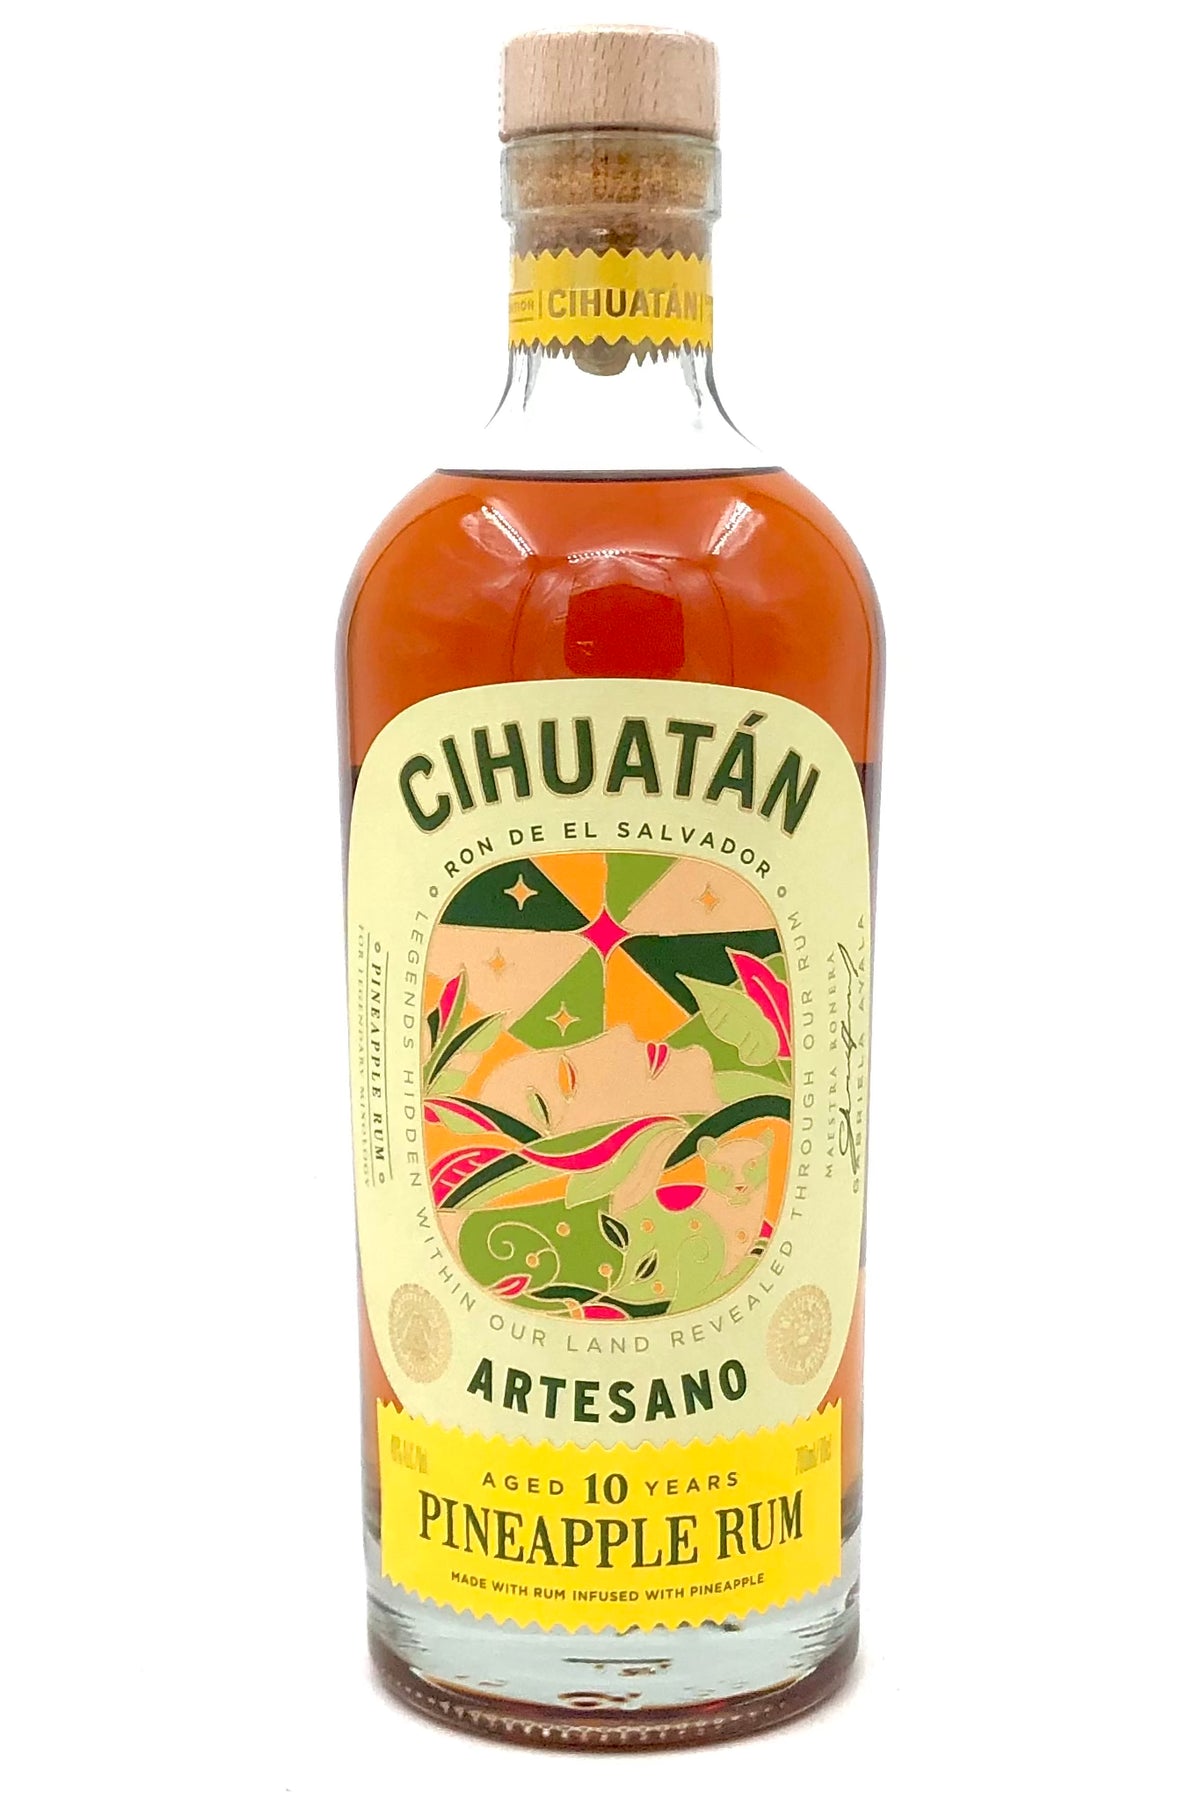 Ron de El Salvador Cihuatan Artesano Pineapple 10 Year Old Rum